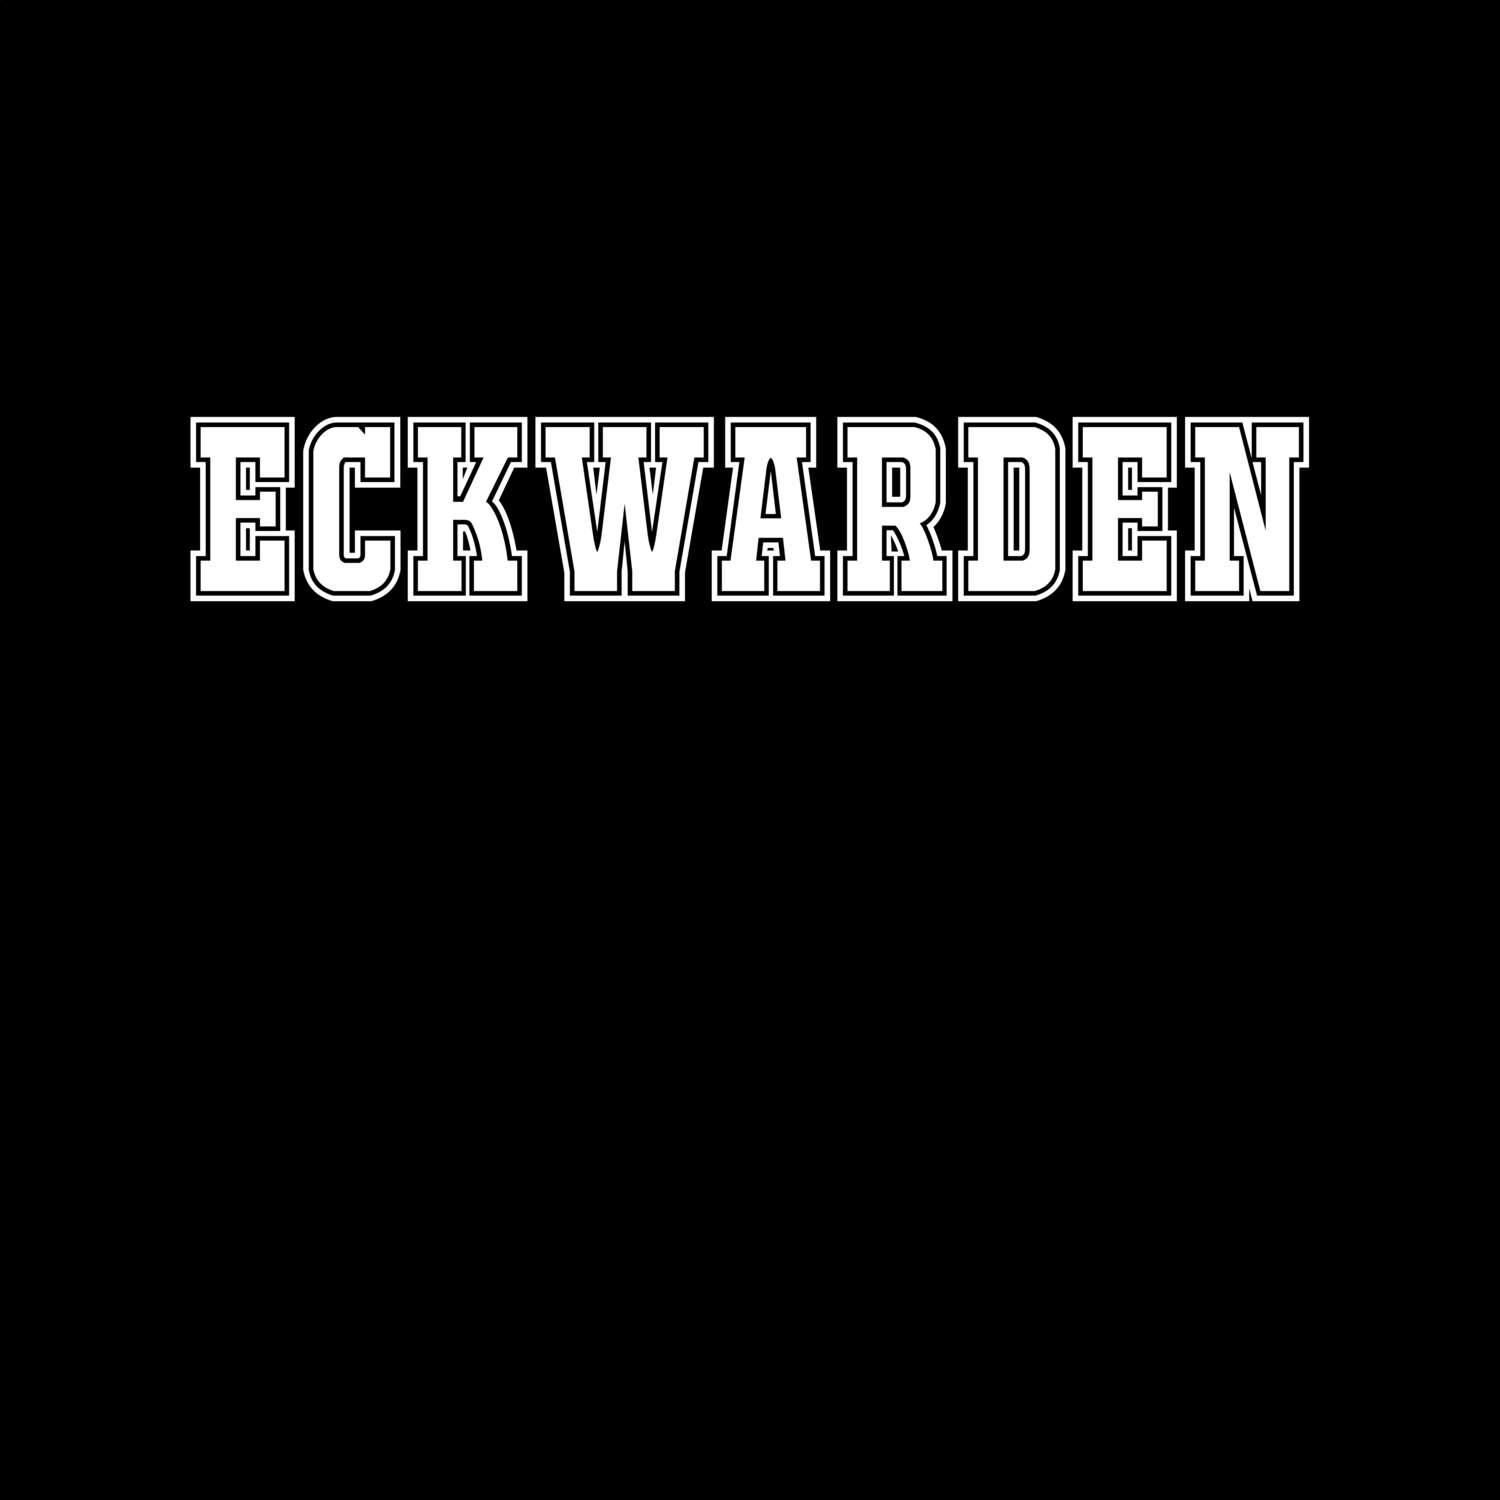 Eckwarden T-Shirt »Classic«